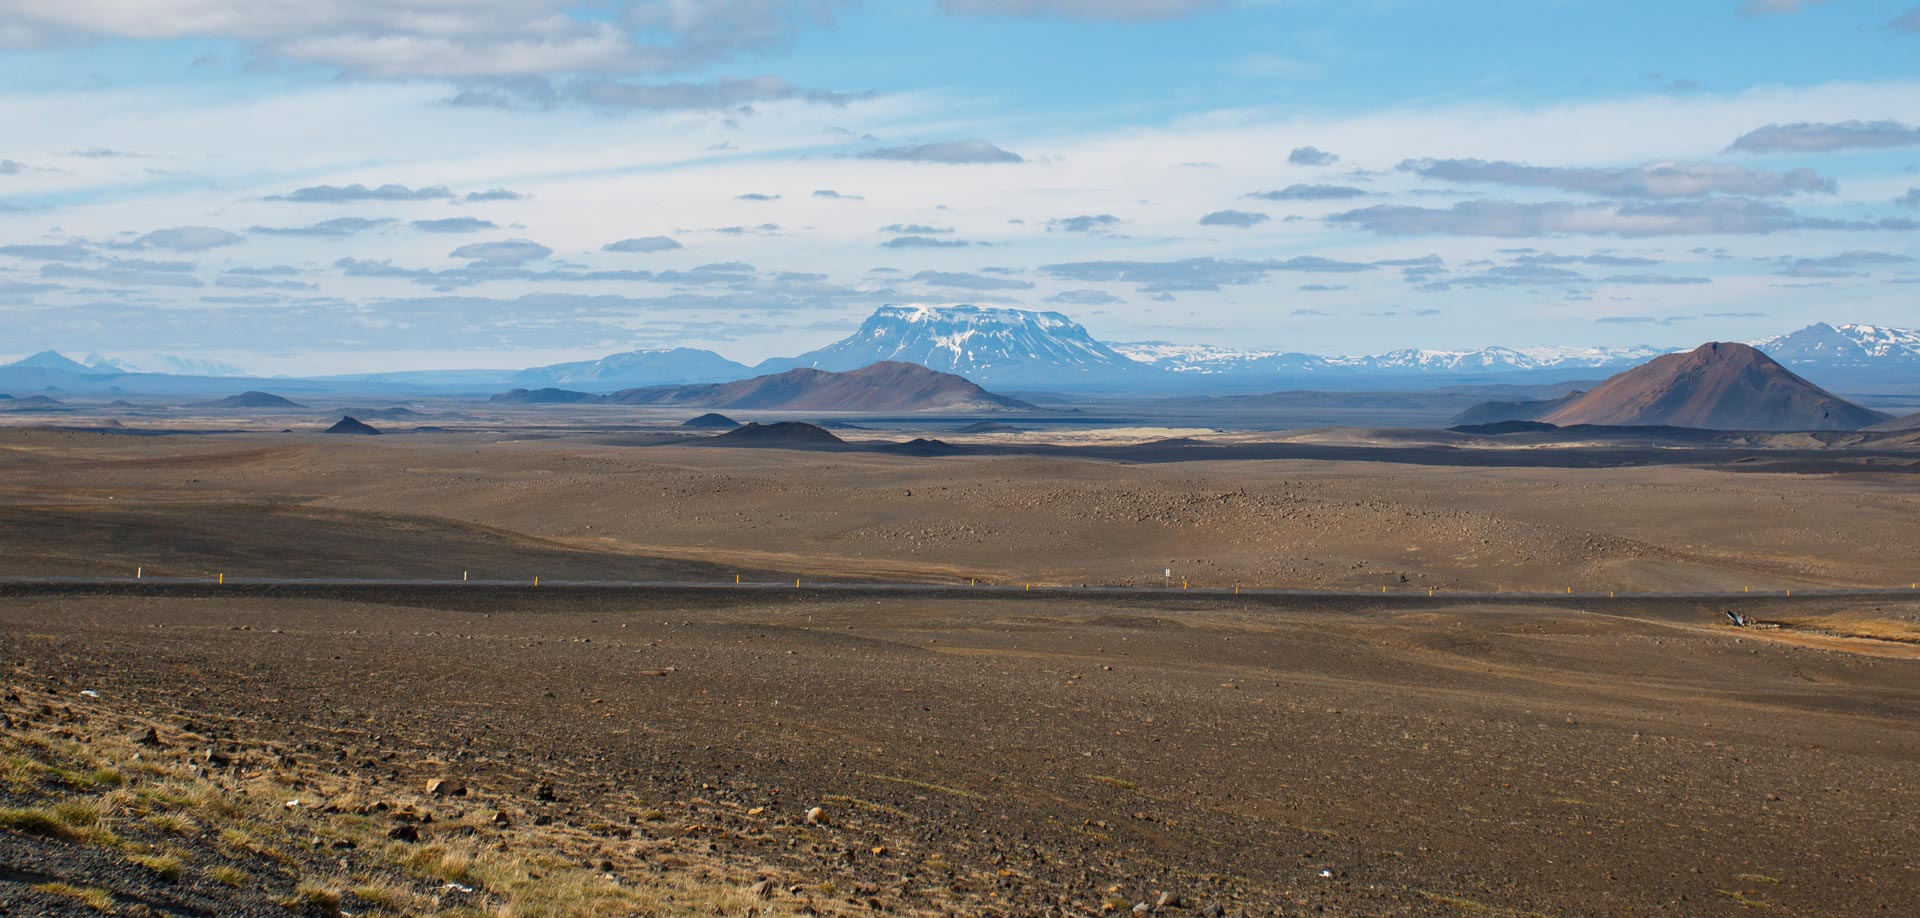 Fantastischer Panoramablick auf das isländische Hochland und den Tafelvulkan Herðubreið